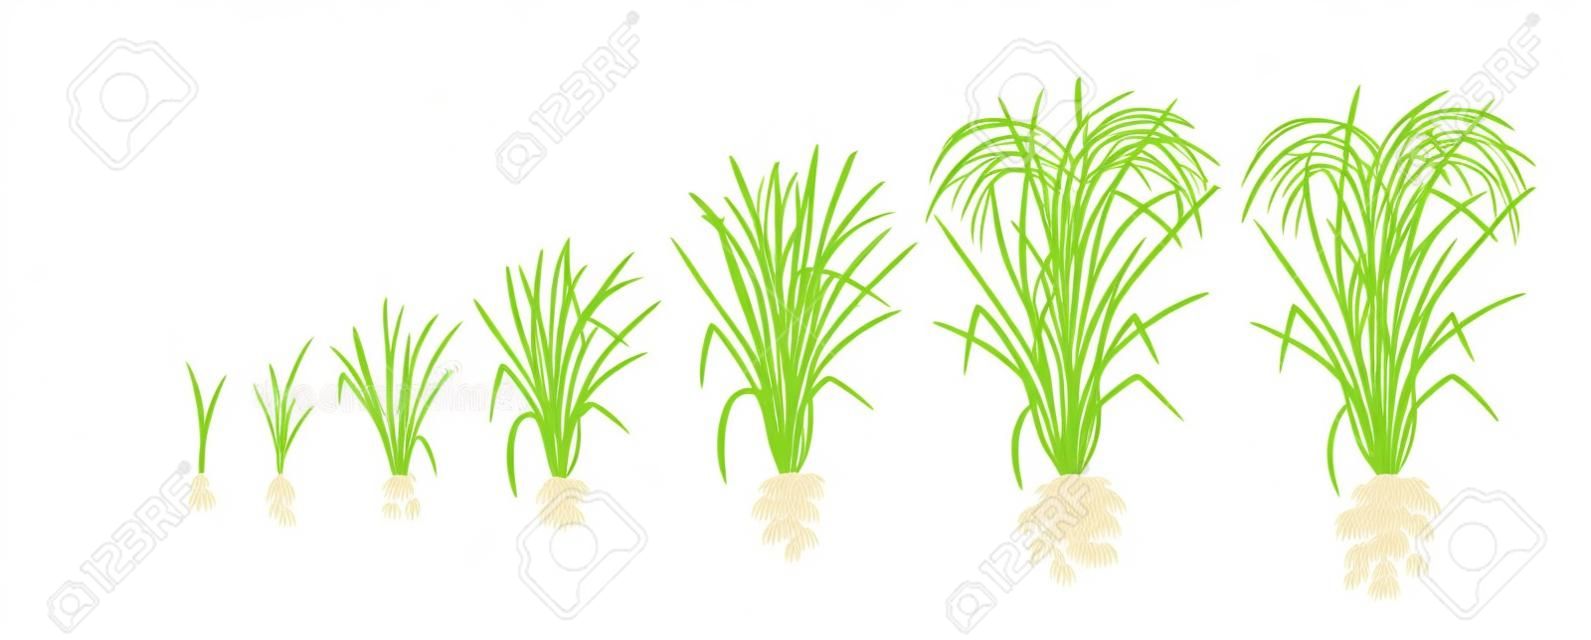 Estágios de crescimento da planta de arroz. Fases de aumento de arroz. Ilustração vetorial. Oryza sativa. Período de maturação. O ciclo de vida. Use fertilizantes. No fundo branco. É a mercadoria agrícola com a terceira maior produção mundial.